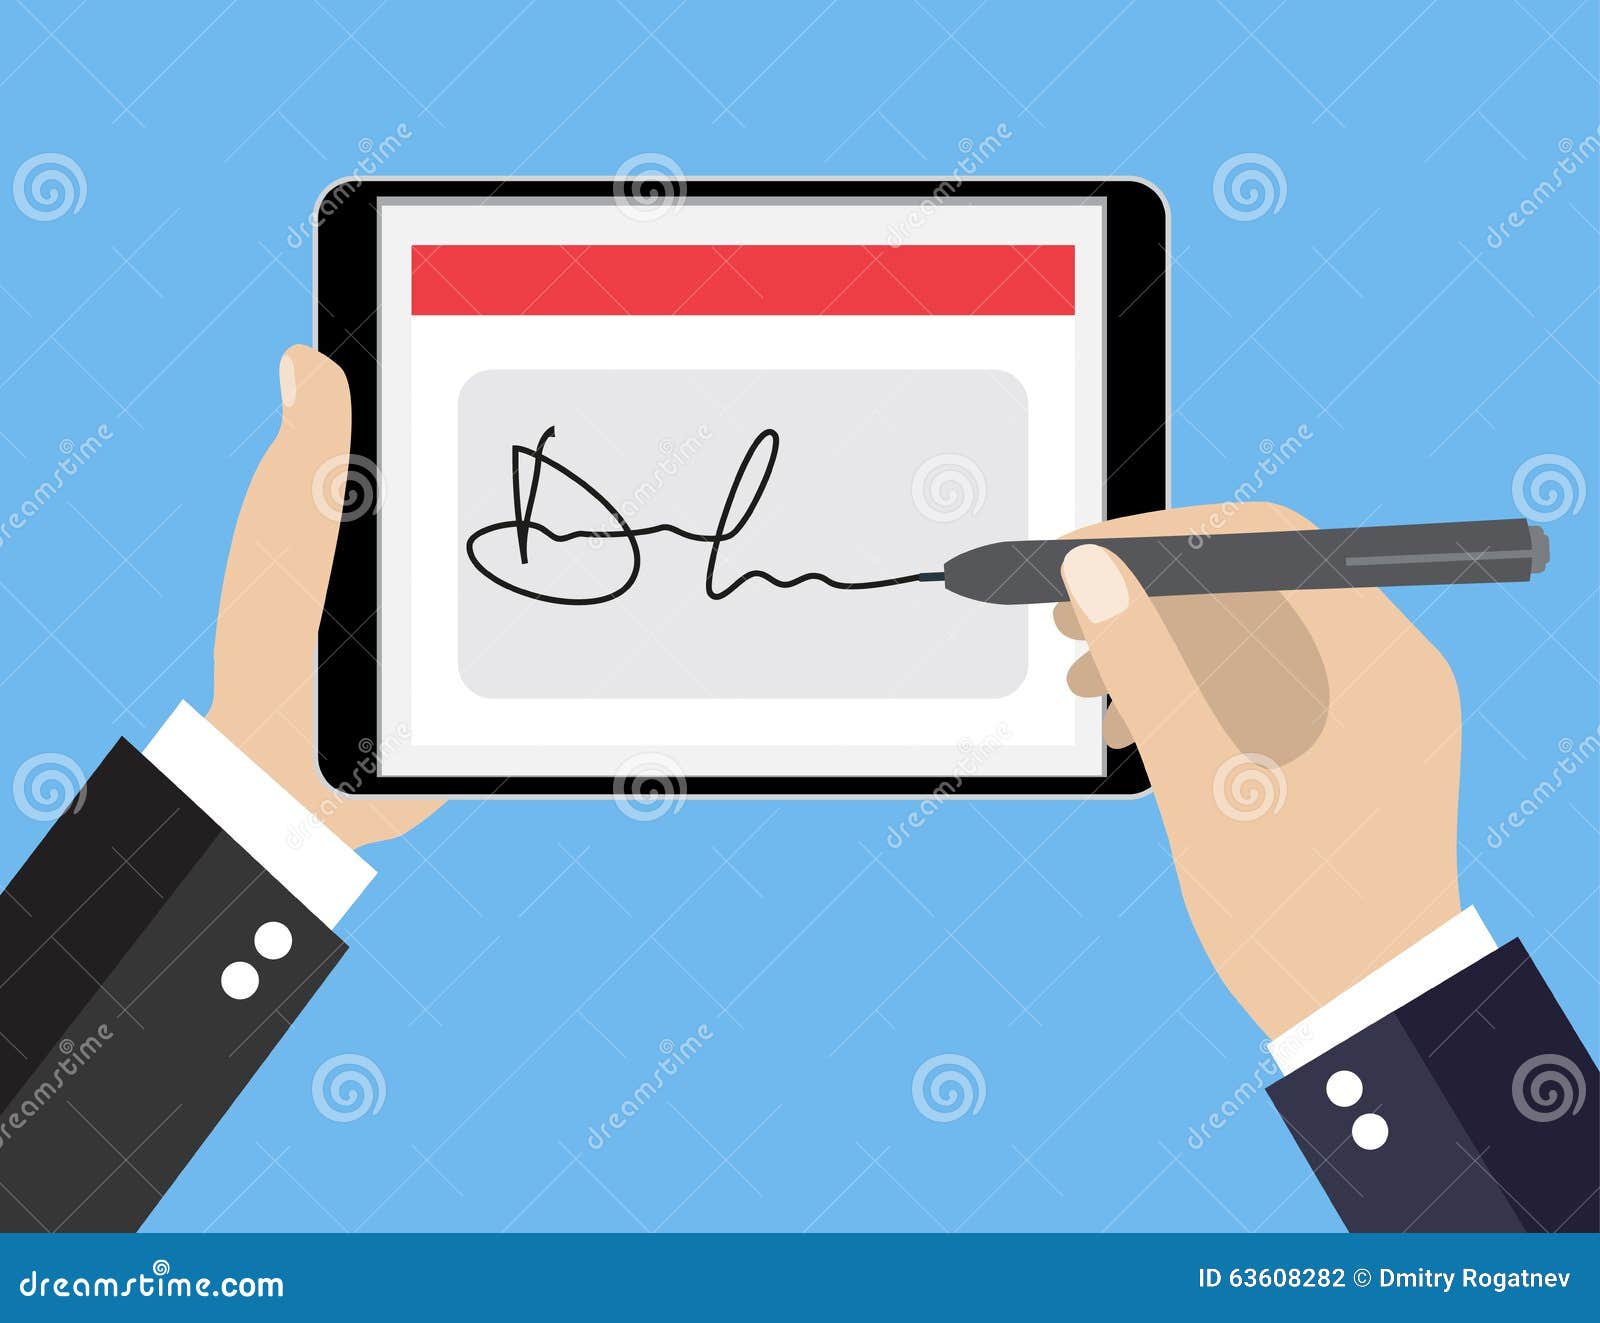 digital signature on tablet